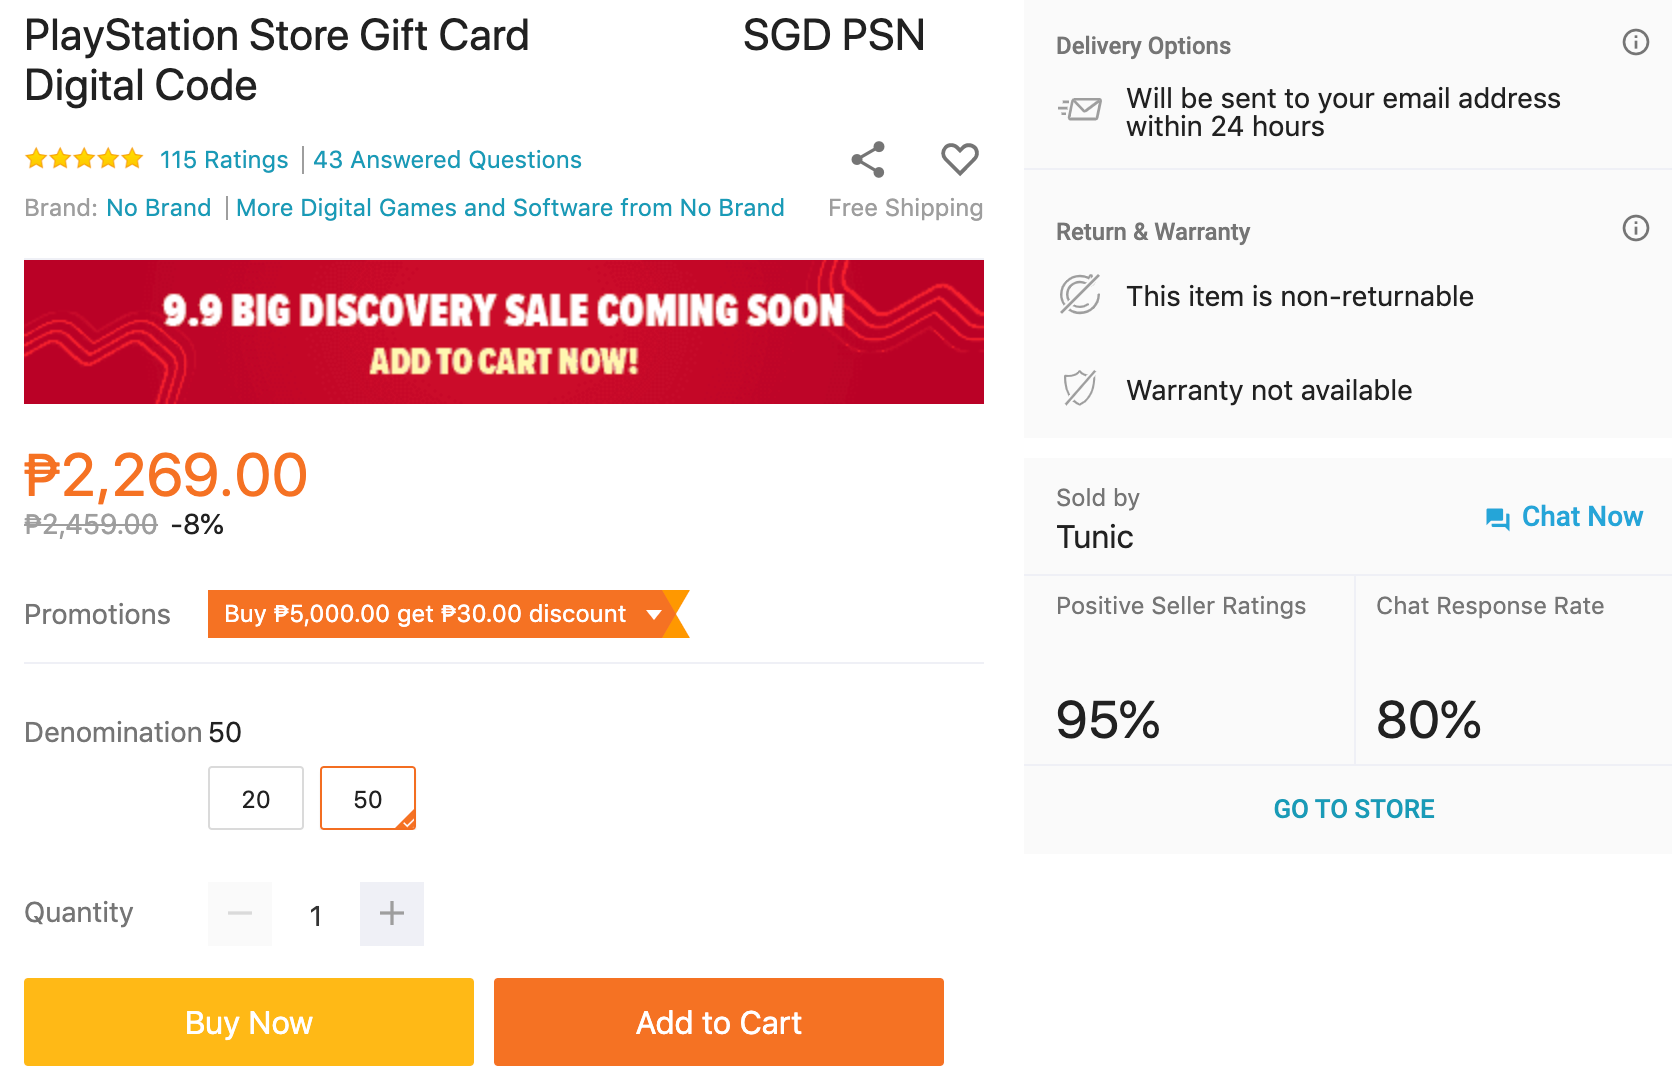 $1 xbox gift card digital code